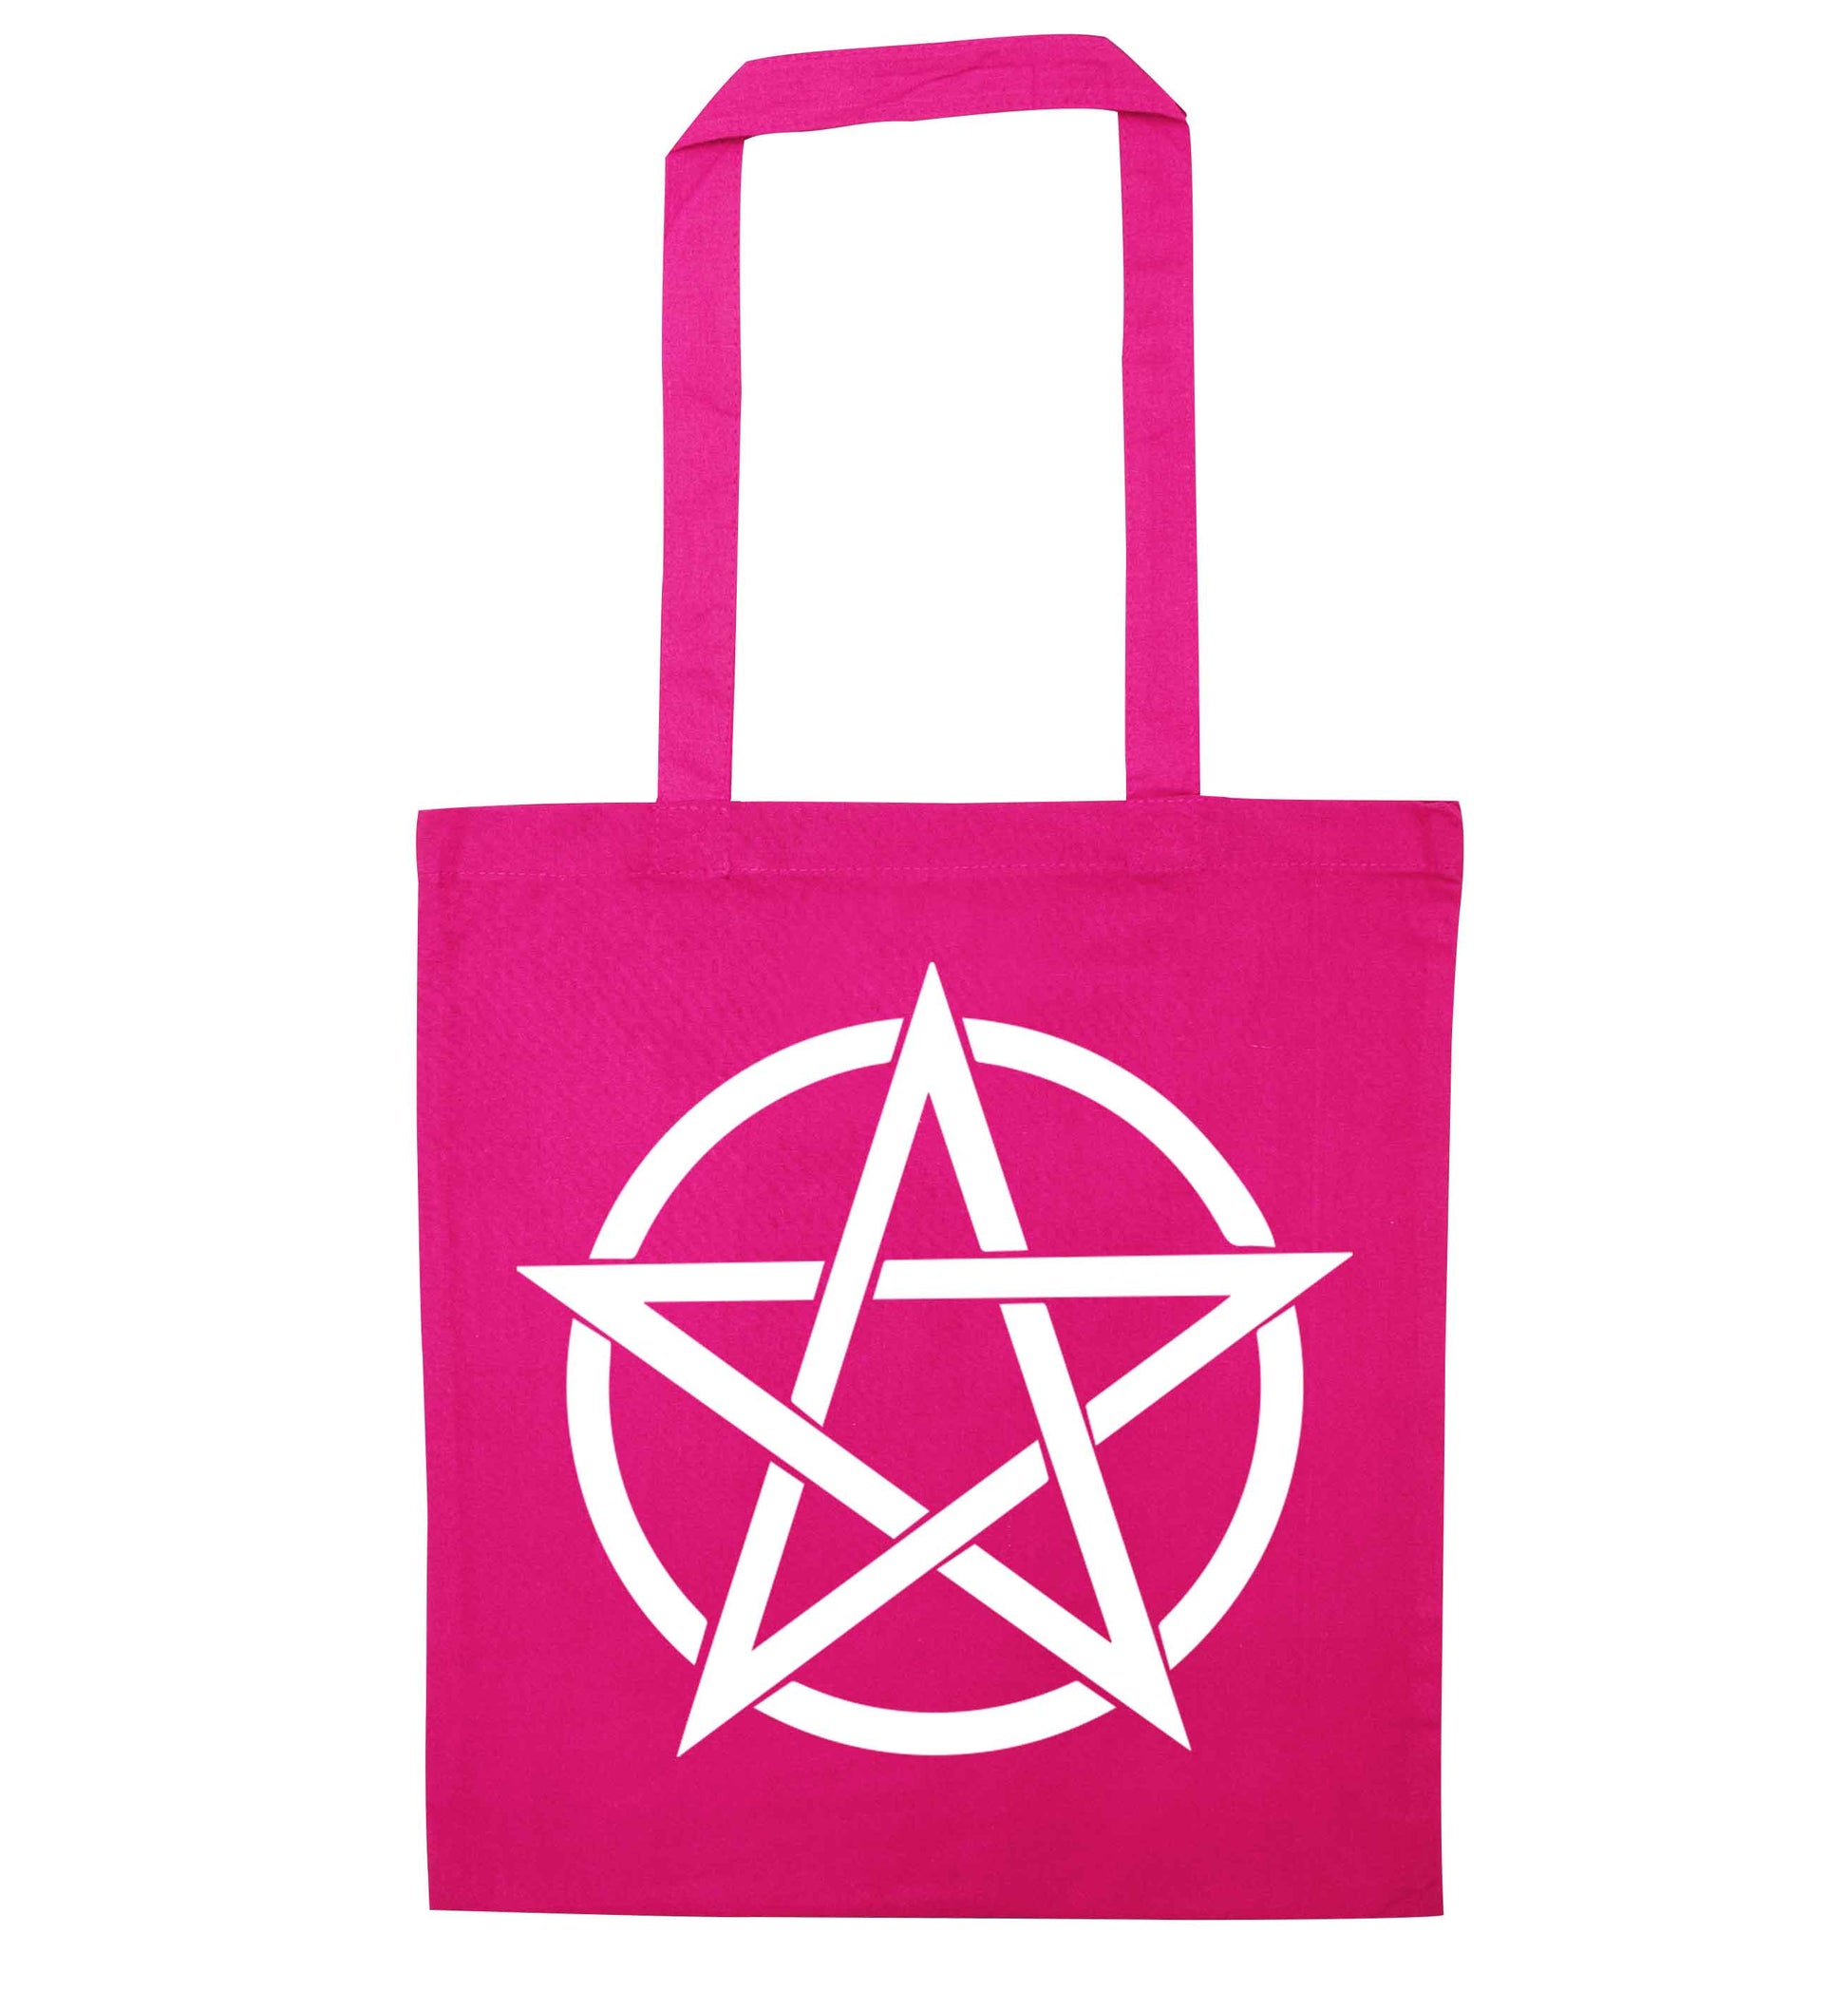 Pentagram symbol pink tote bag